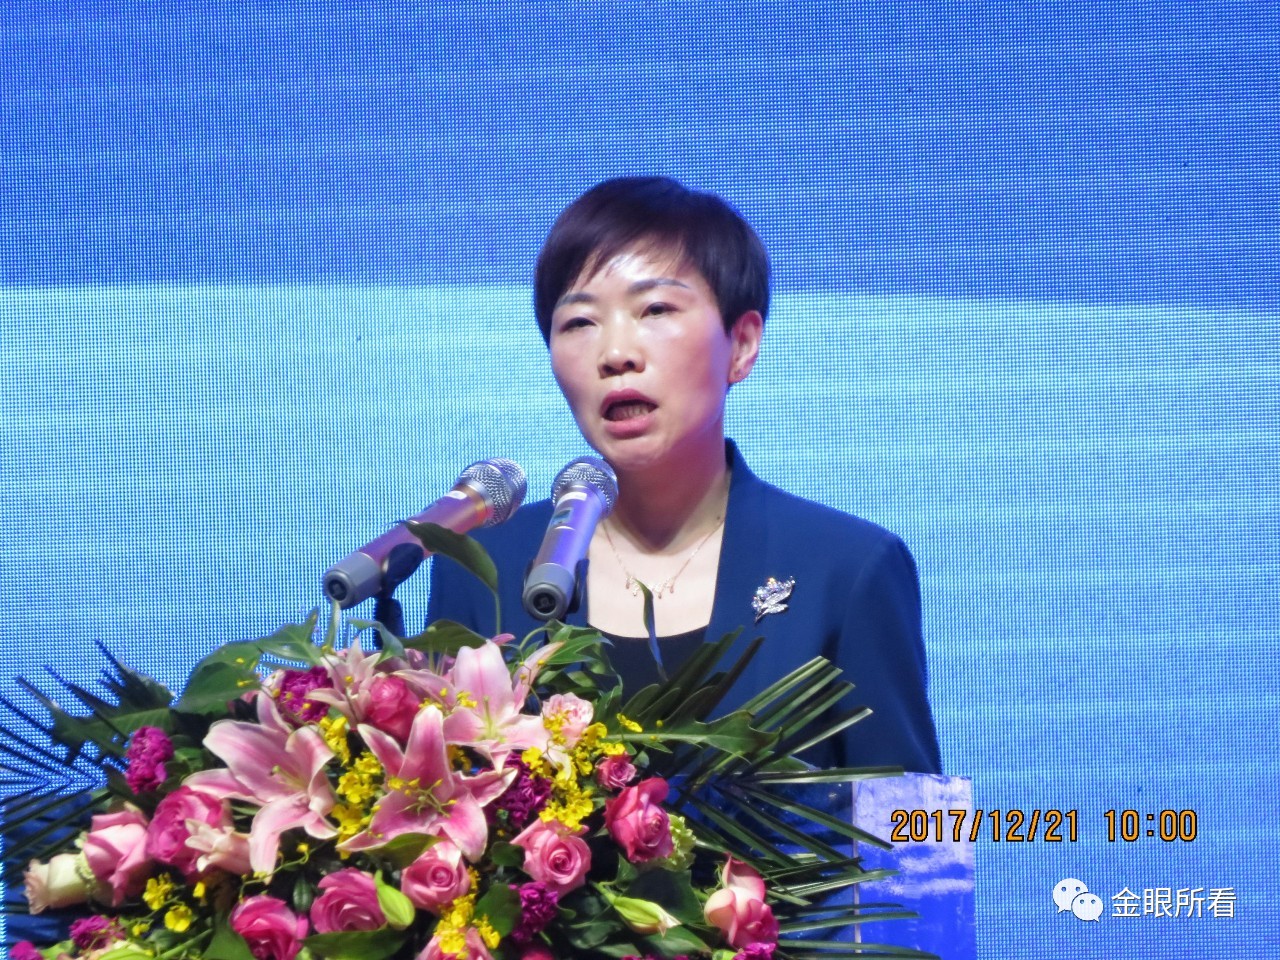 高安市副市长徐爱文表示,汪鸣所长对高安物流产业发展提出的建议非常